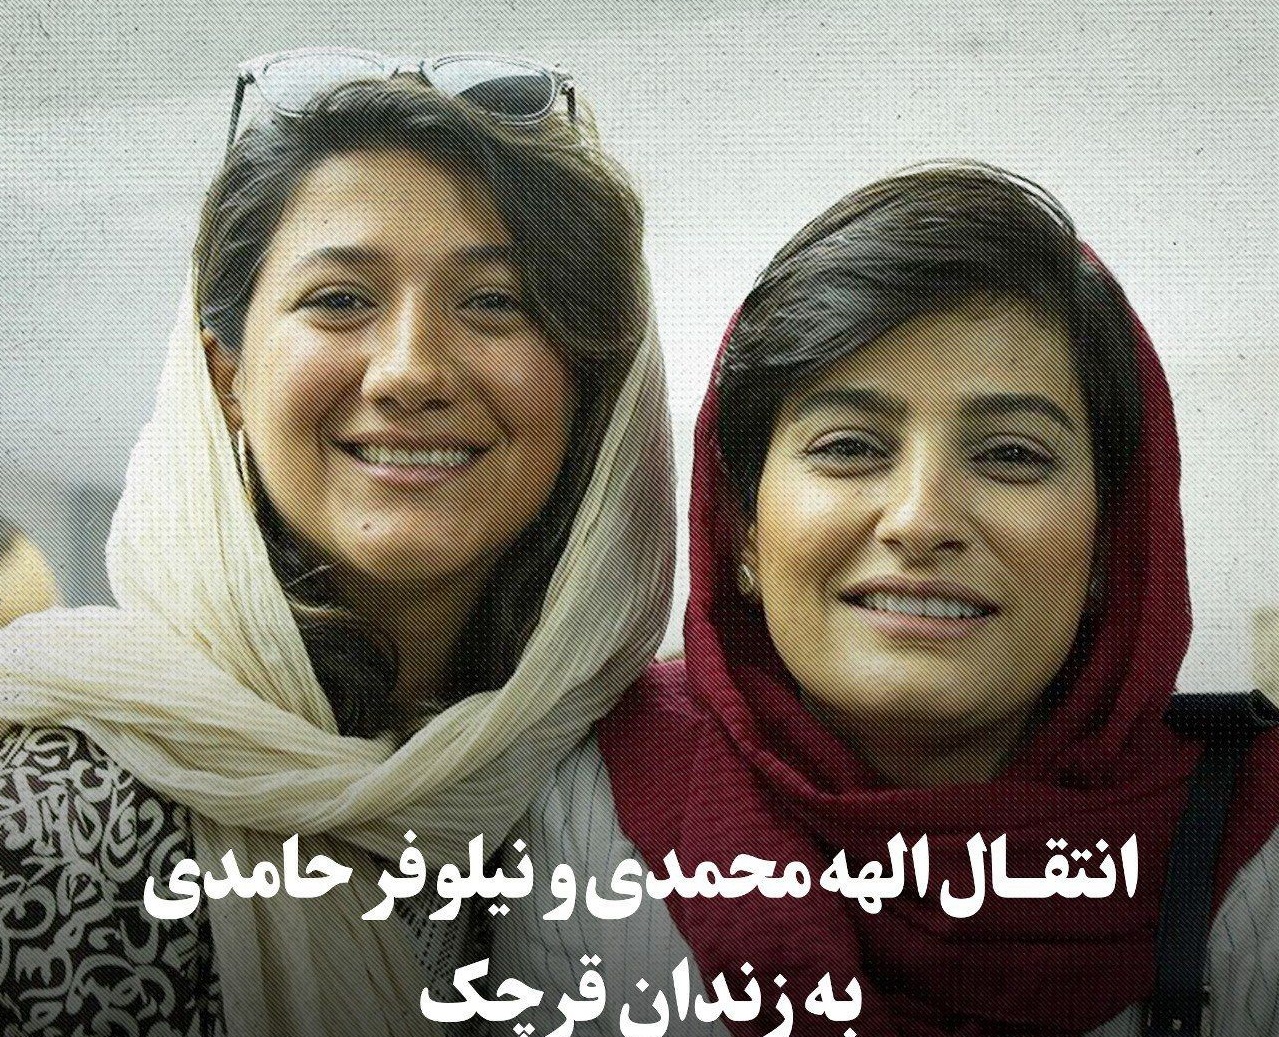 وضعیت الهه محمدی و نیلوفر حامدی به زندان قرچک